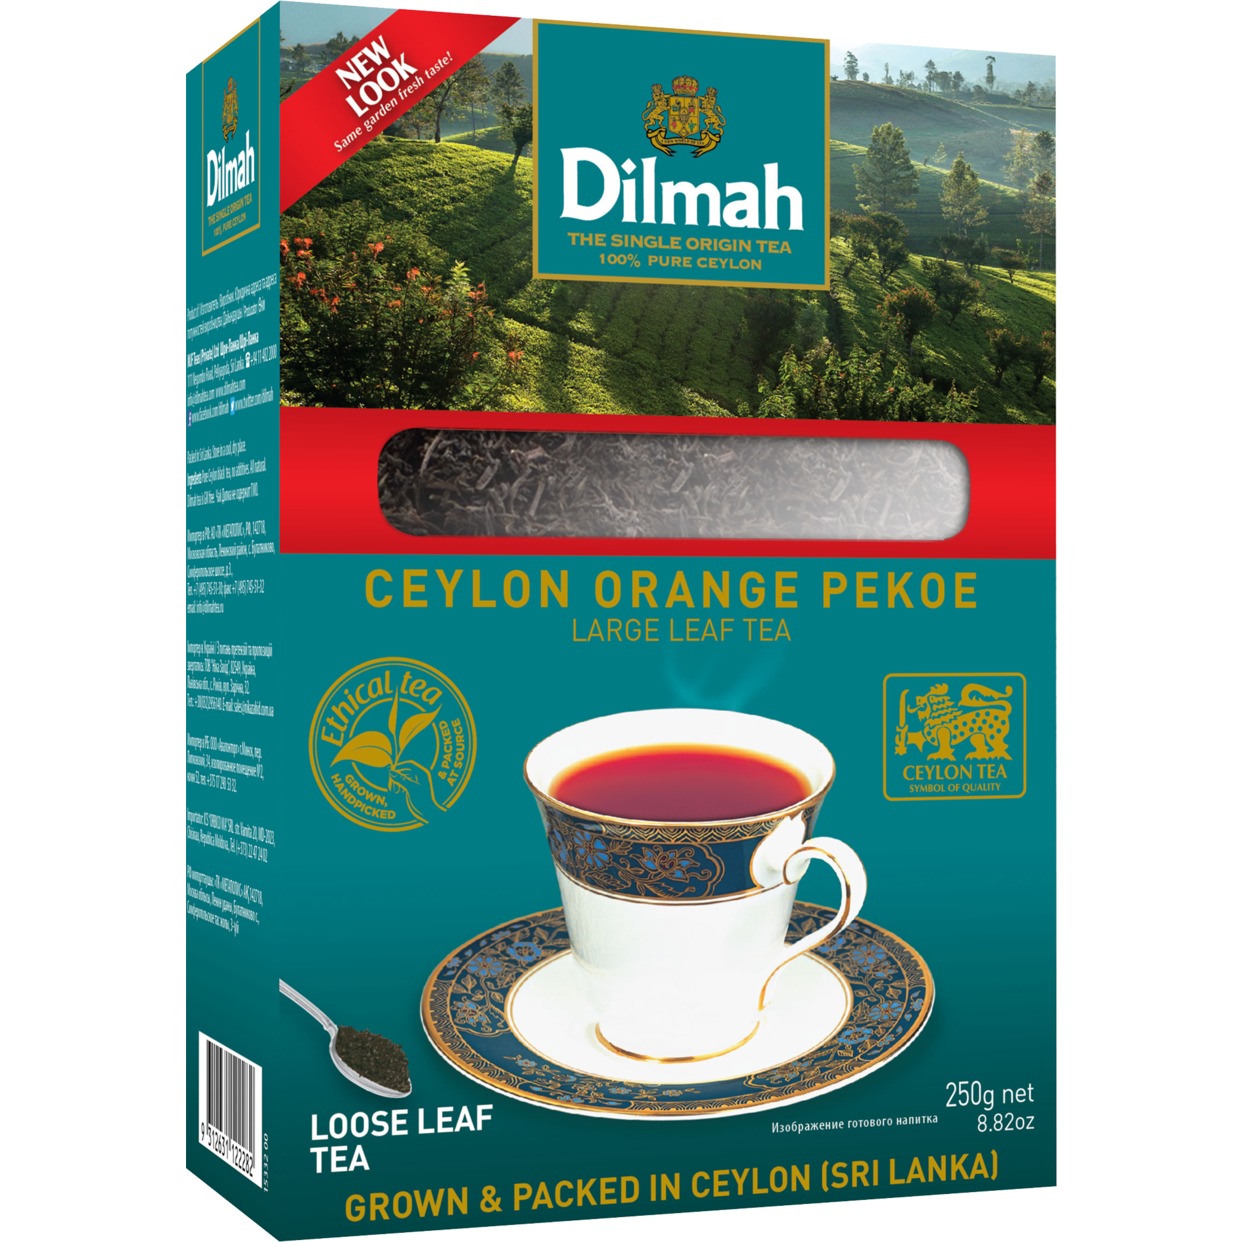 Чай Dilmah, черный, крупнолистовой, 250 г по акции в Пятерочке